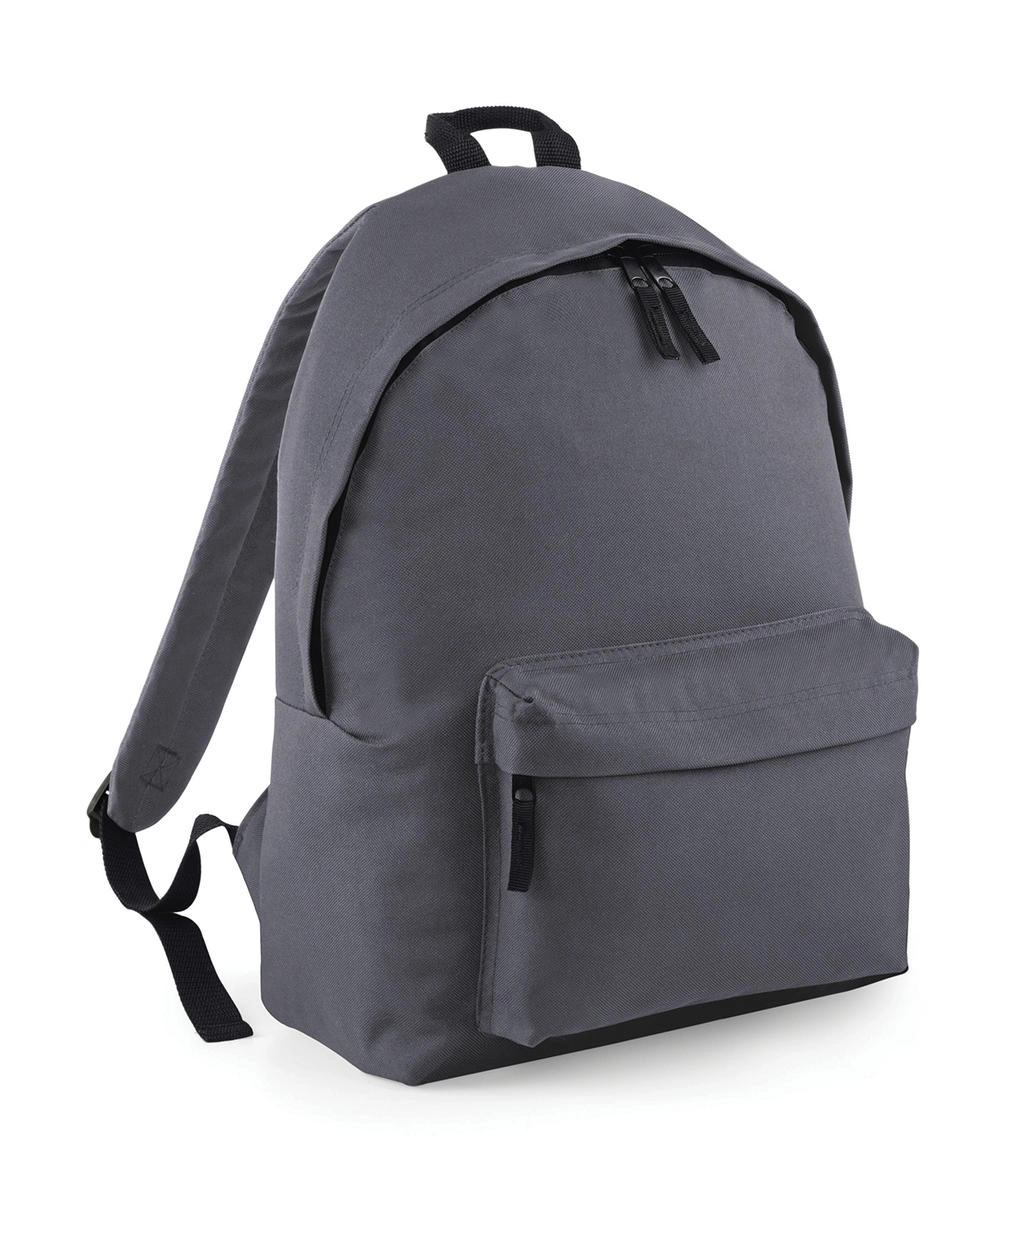 Maxi Fashion Backpack zum Besticken und Bedrucken in der Farbe Graphite Grey mit Ihren Logo, Schriftzug oder Motiv.